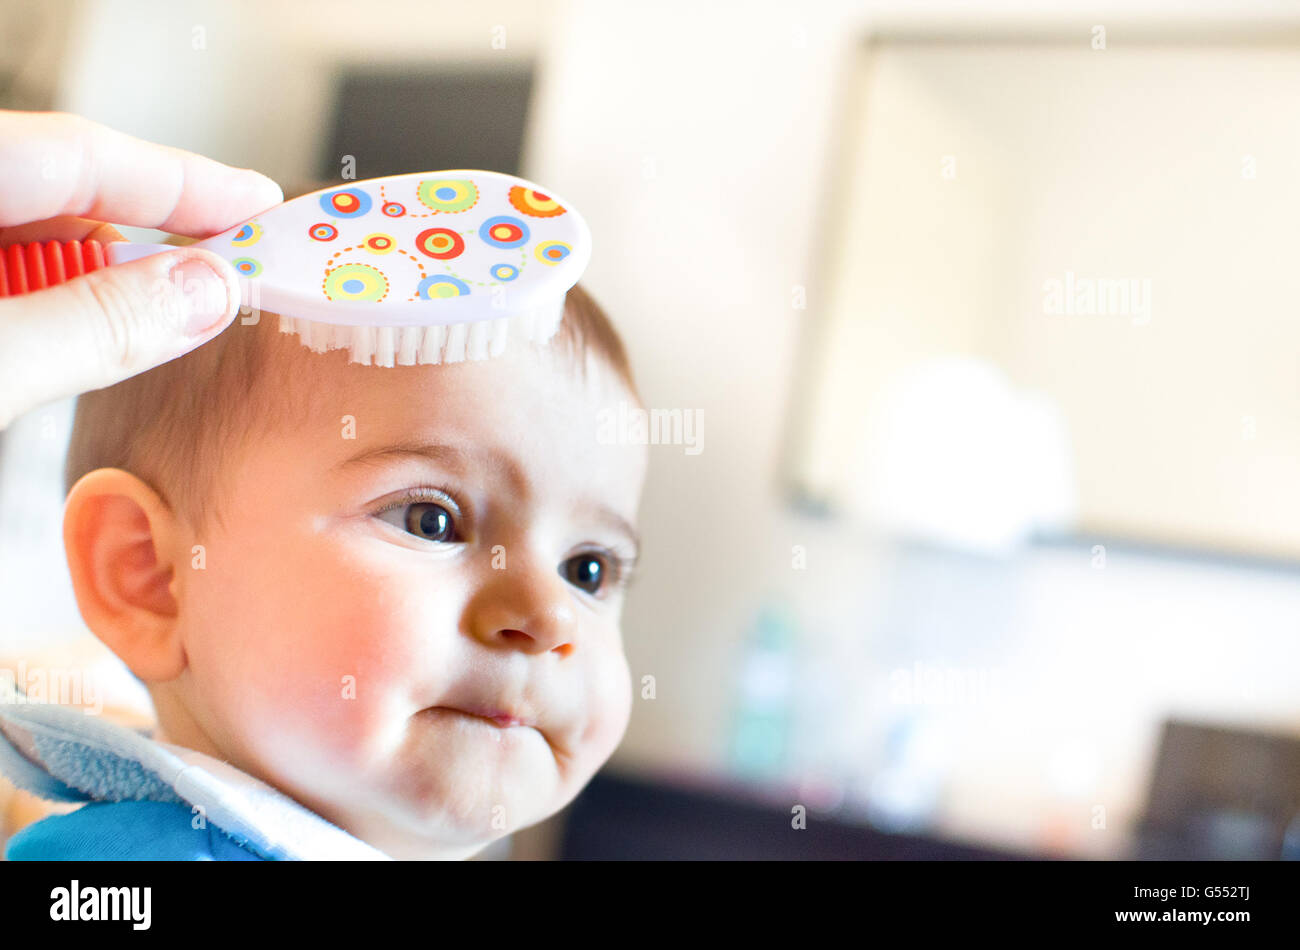 baby hairbrush newborn Stock Photo